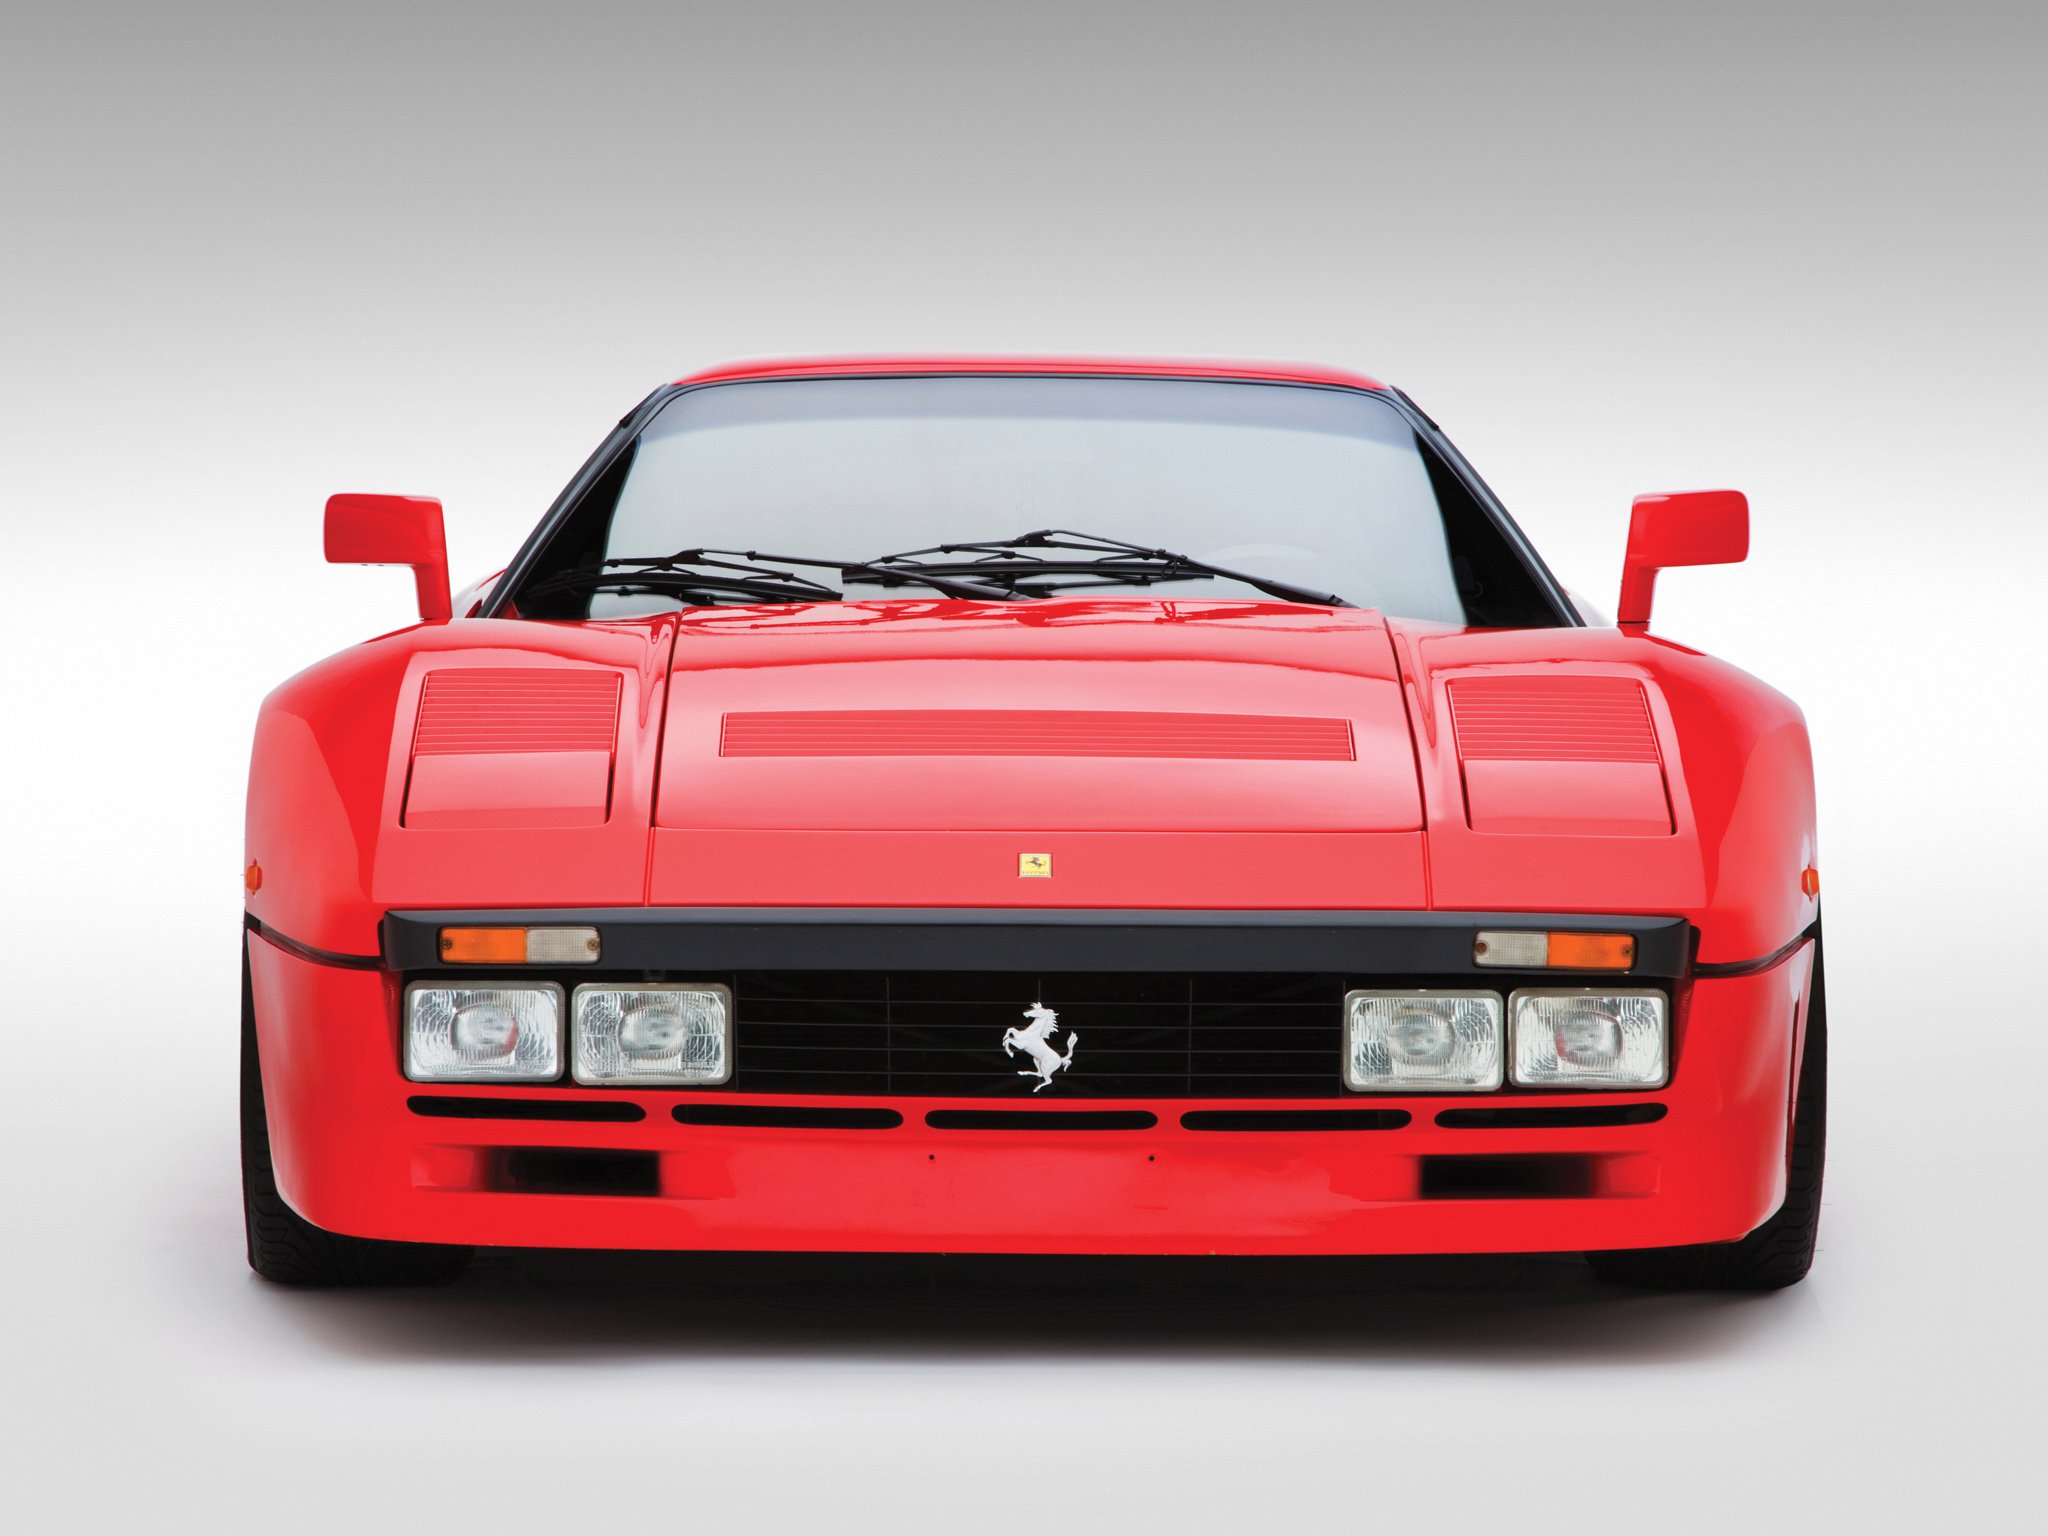 Ferrari 288 gto. Ferrari 288 GTO 1984. Ferrari Testarossa 1984. Ferrari GTO 1984.